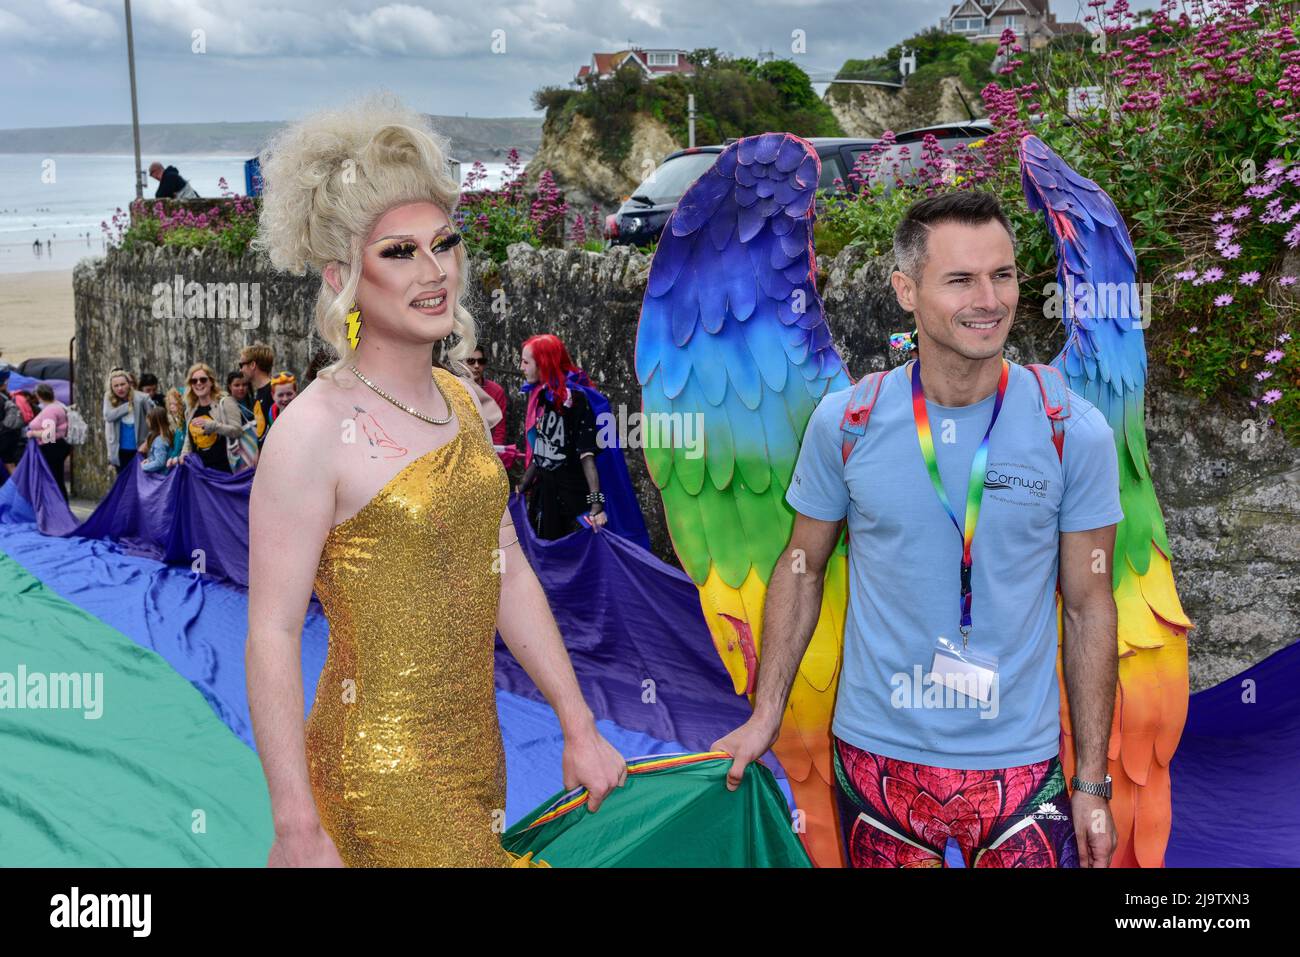 Les participants qui détiennent le drapeau gay Pride dans le vibrant défilé coloré de Cornwall Prides Pride Pride Pride au centre-ville de Newquay, au Royaume-Uni. Banque D'Images